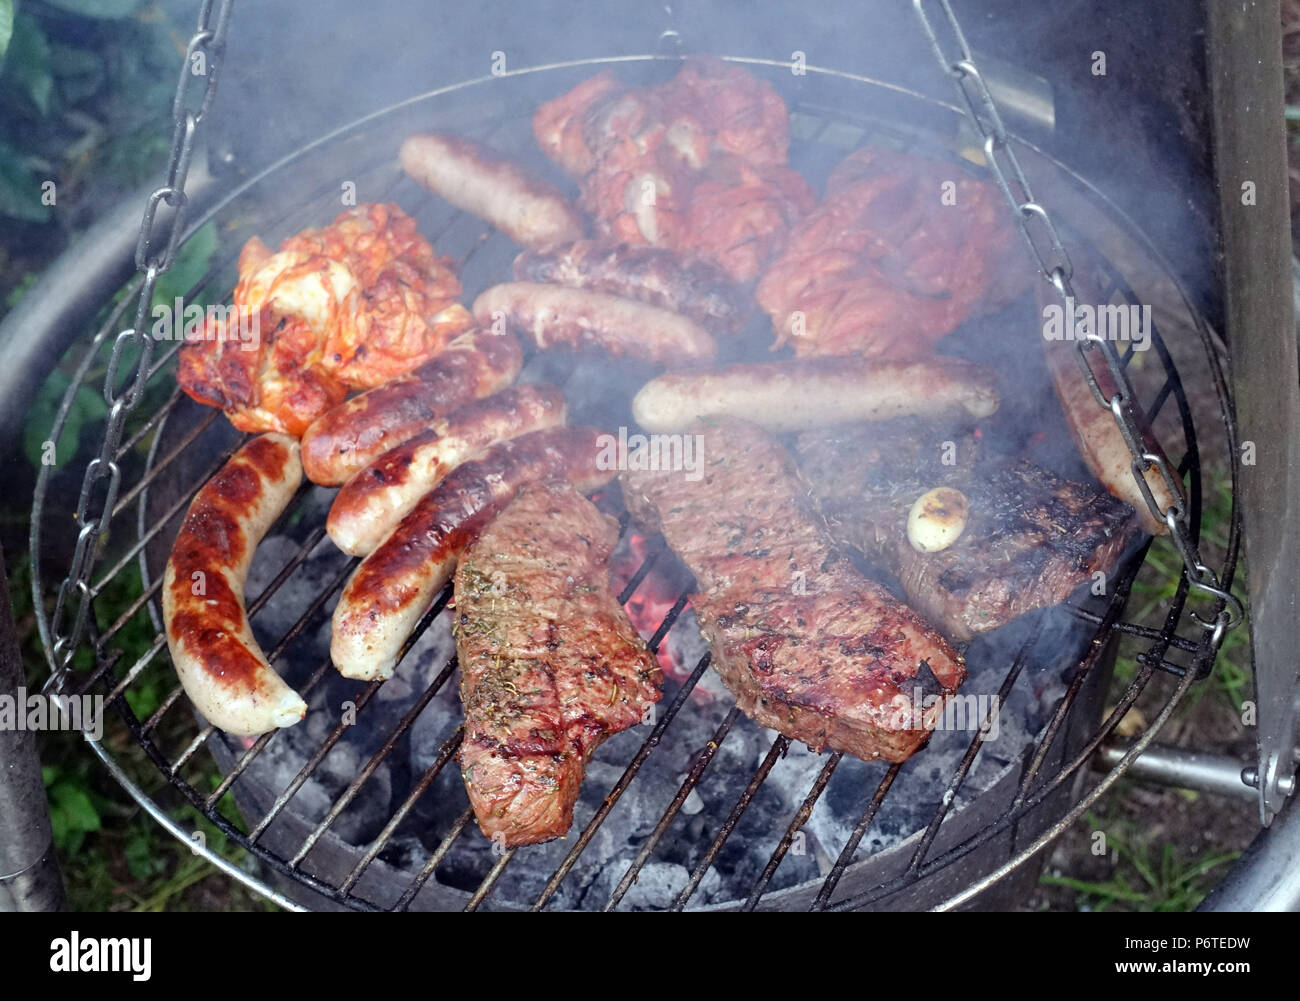 Hambourg, la viande et les saucisses sont cuites sur un grill Banque D'Images